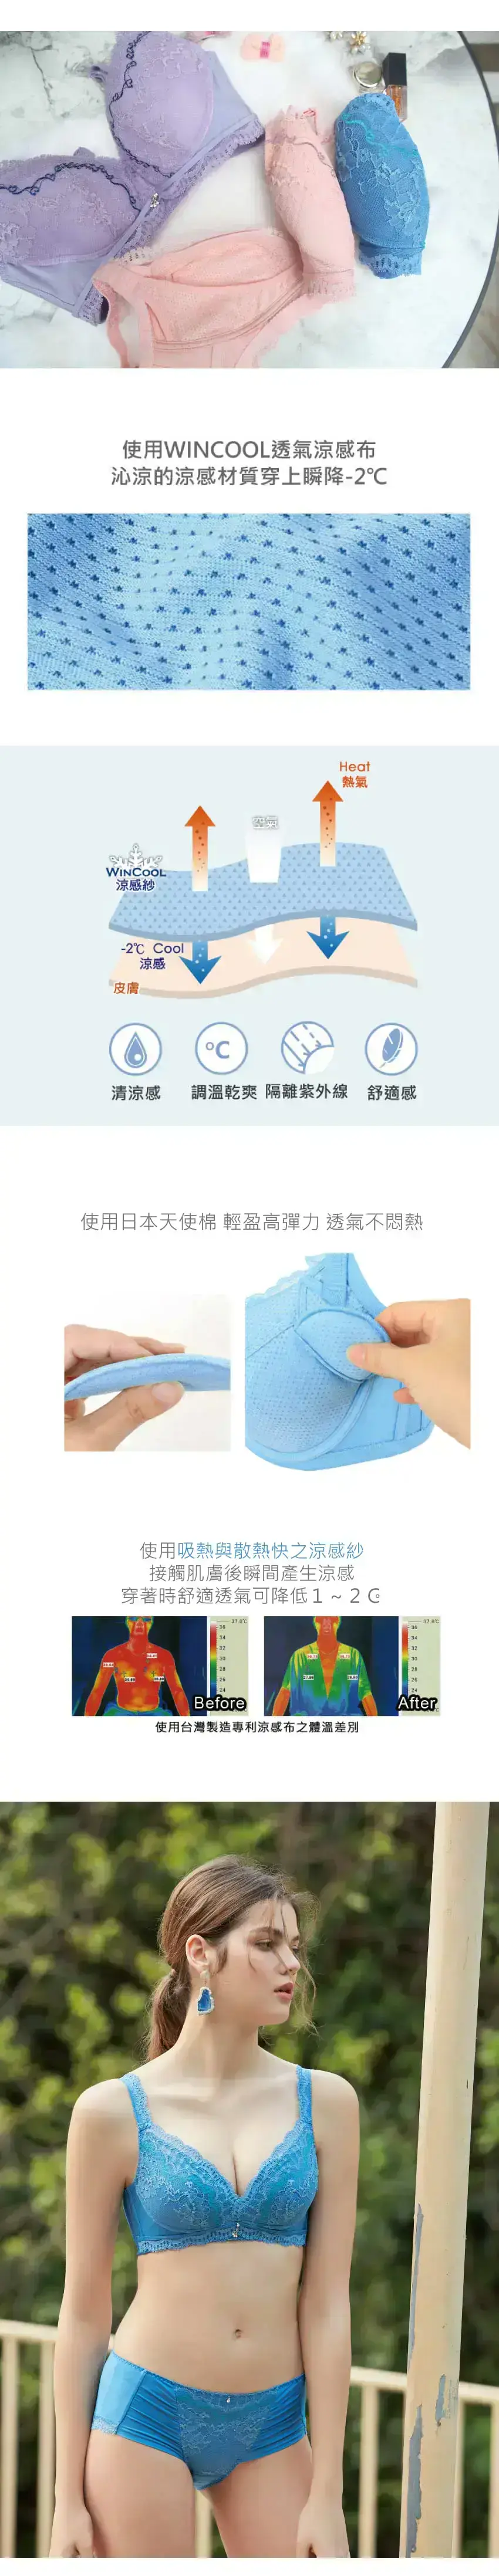 冰絲涼感天使棉機能降溫無鋼圈內衣BCD罩杯(深濛藍)